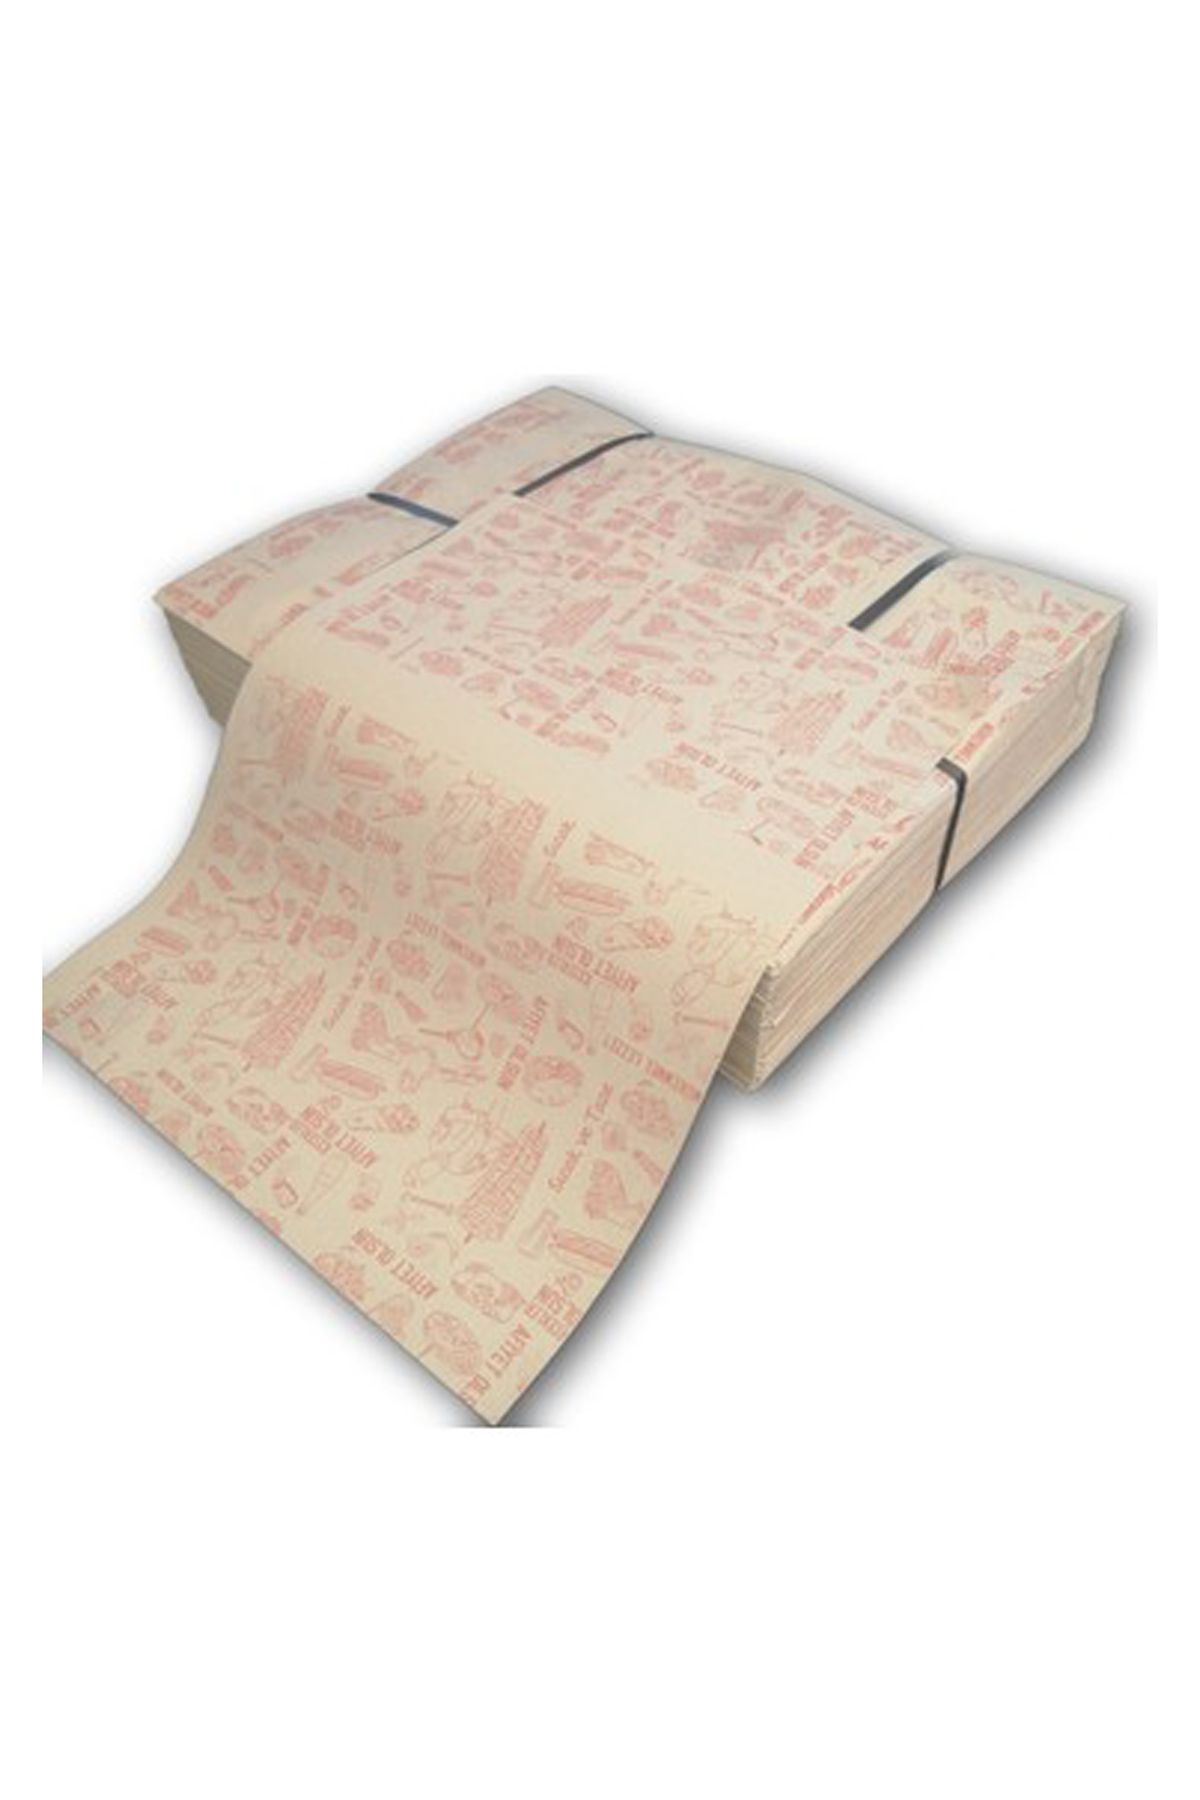 Sarem Ambalaj Sandviç Dürüm Paketleme Sarma Ambalaj Kağıdı Esmer Sülfit 1 kg 35x50 100 Adet (Afiyet olsun yazılı)